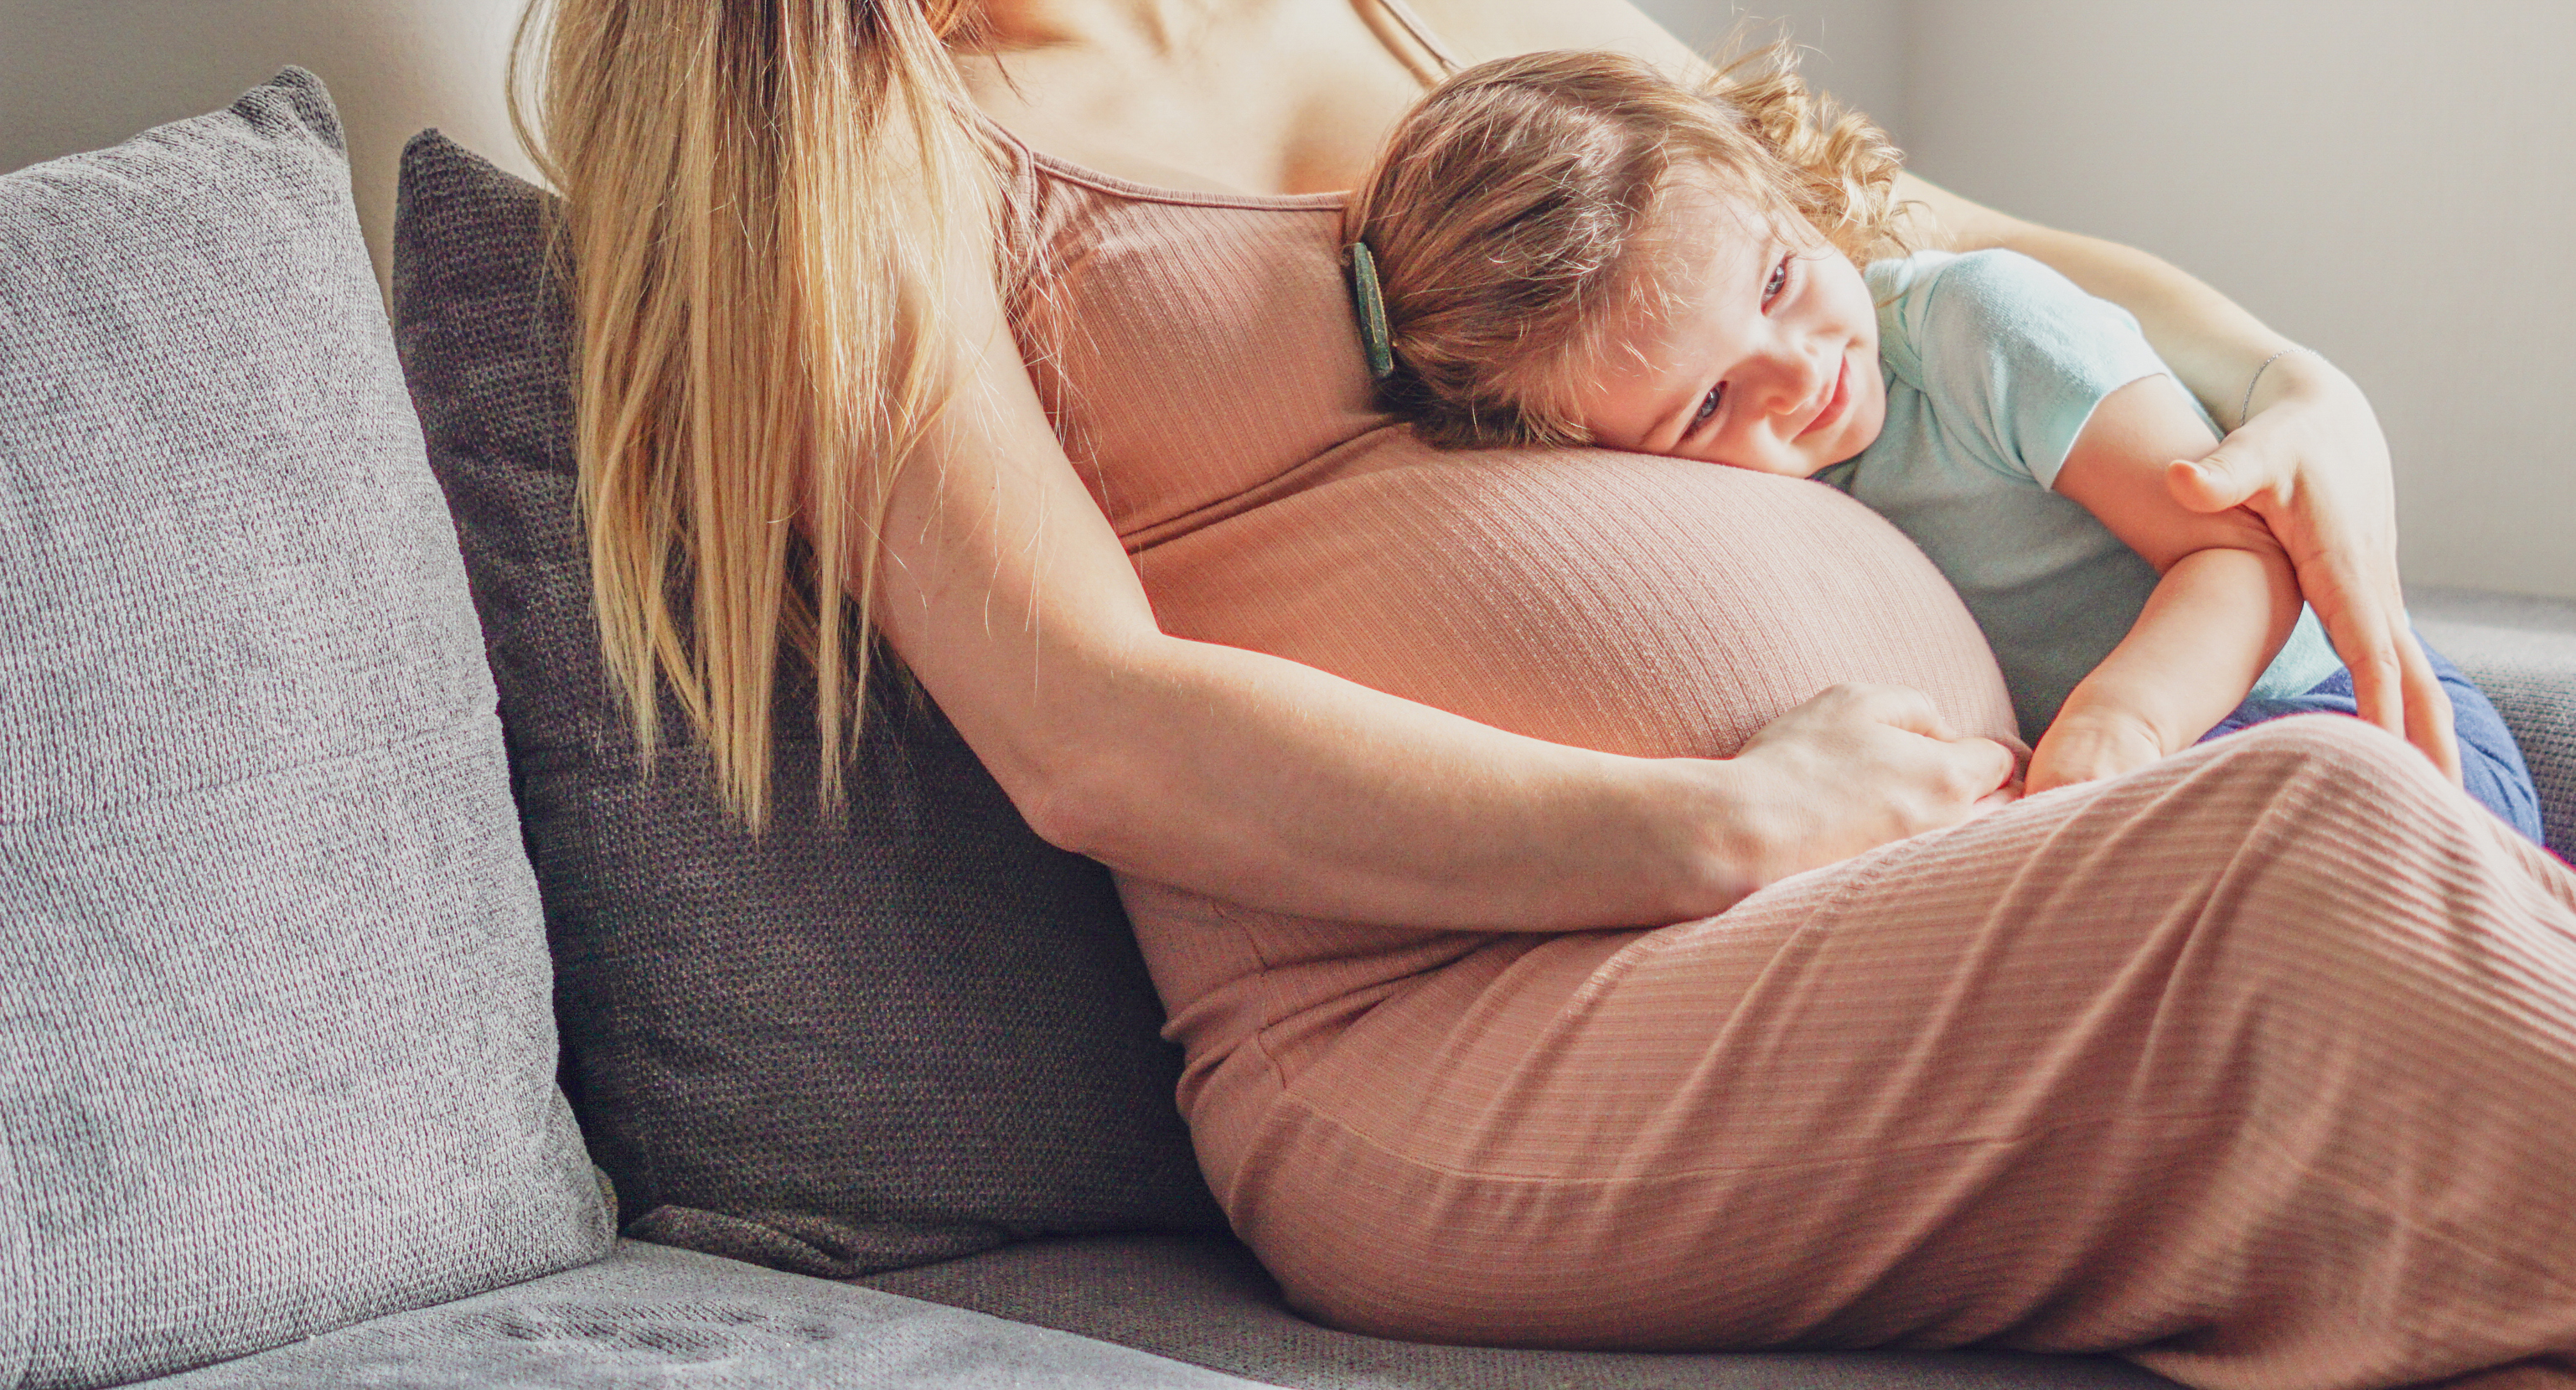 6 manières de déjà créer un lien avec votre bébé avant la naissance